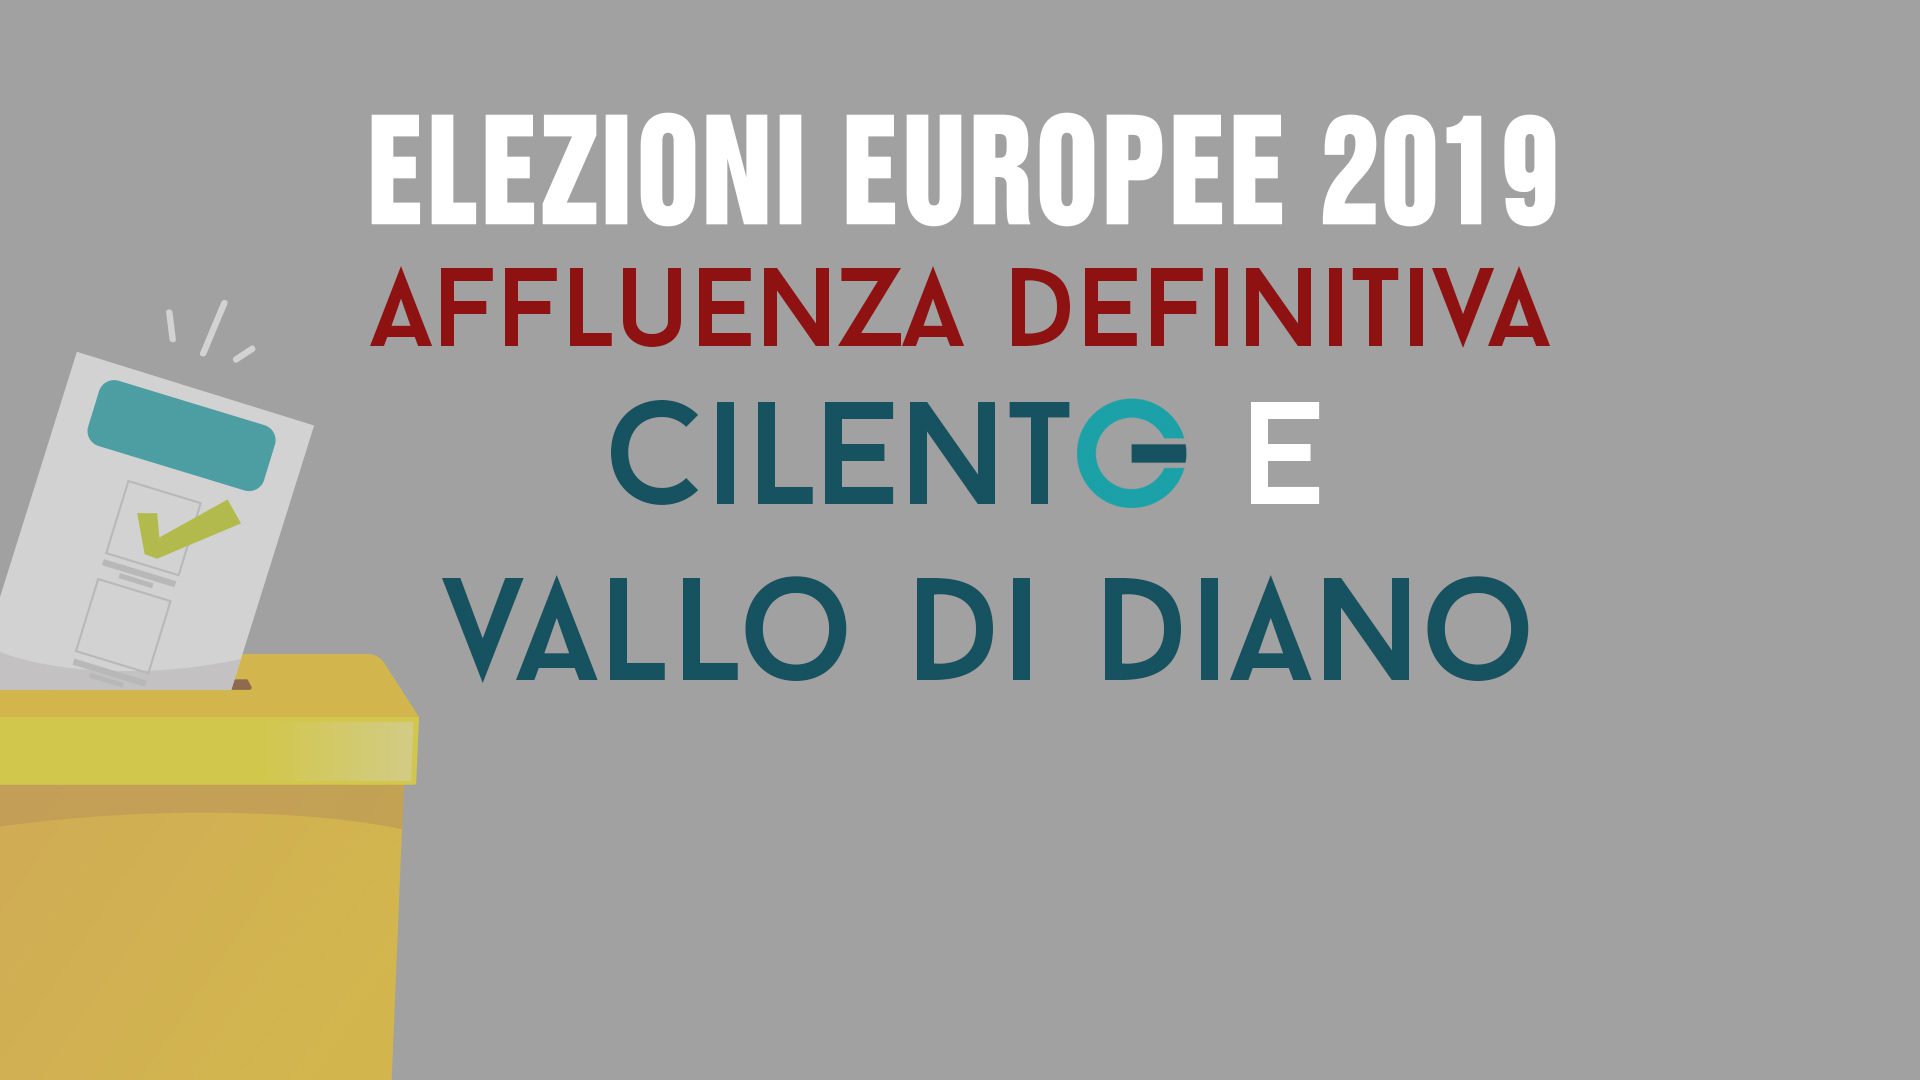 Europee 2019, chiusi i seggi nel Cilento e Vallo di Diano: affluenza definitiva